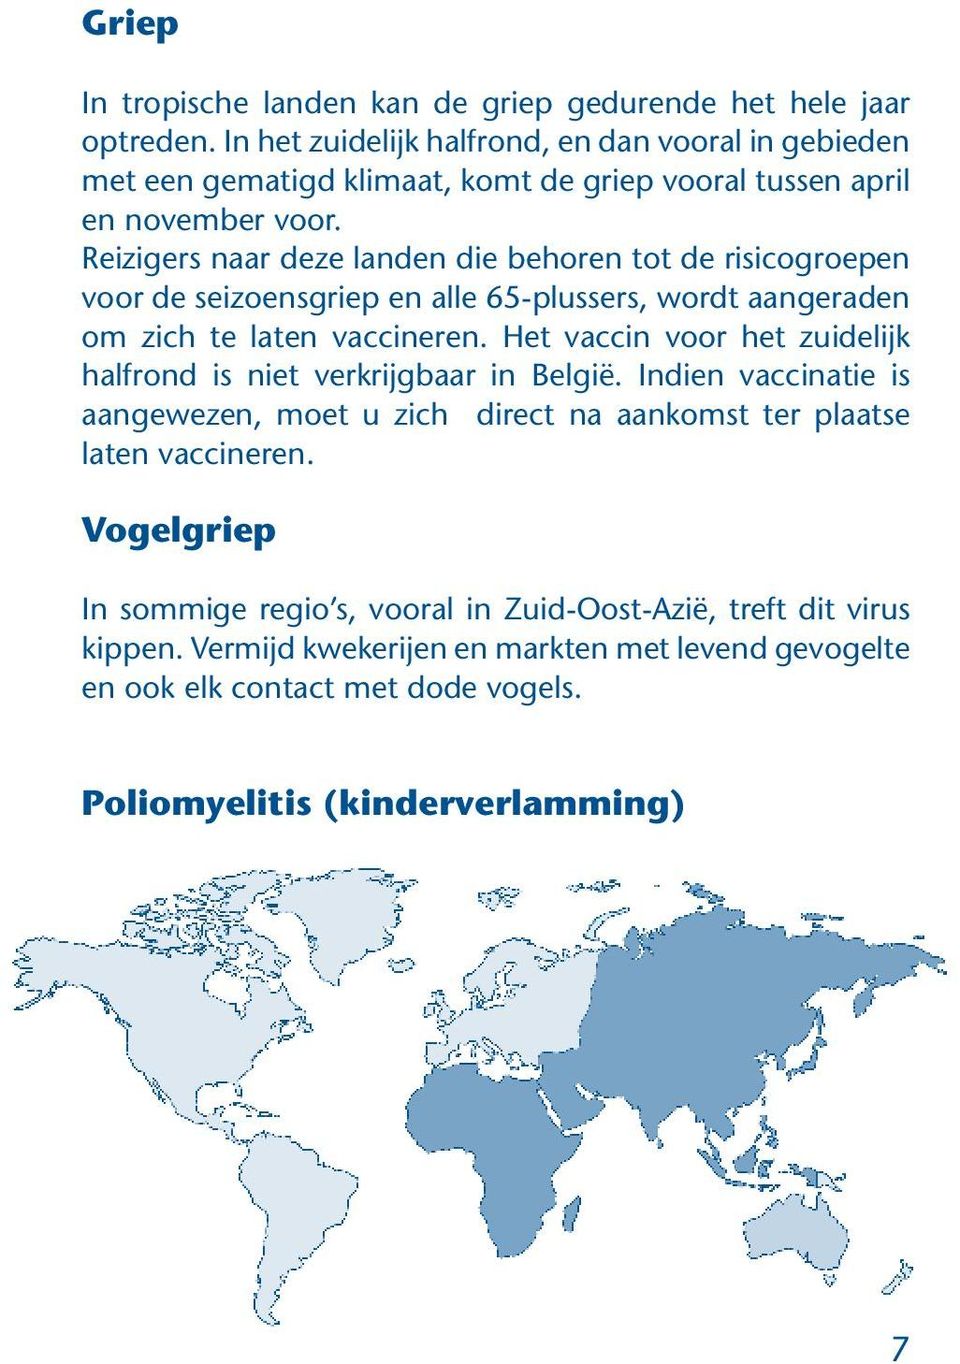 Reizigers naar deze landen die behoren tot de risicogroepen voor de seizoensgriep en alle 65-plussers, wordt aangeraden om zich te laten vaccineren.